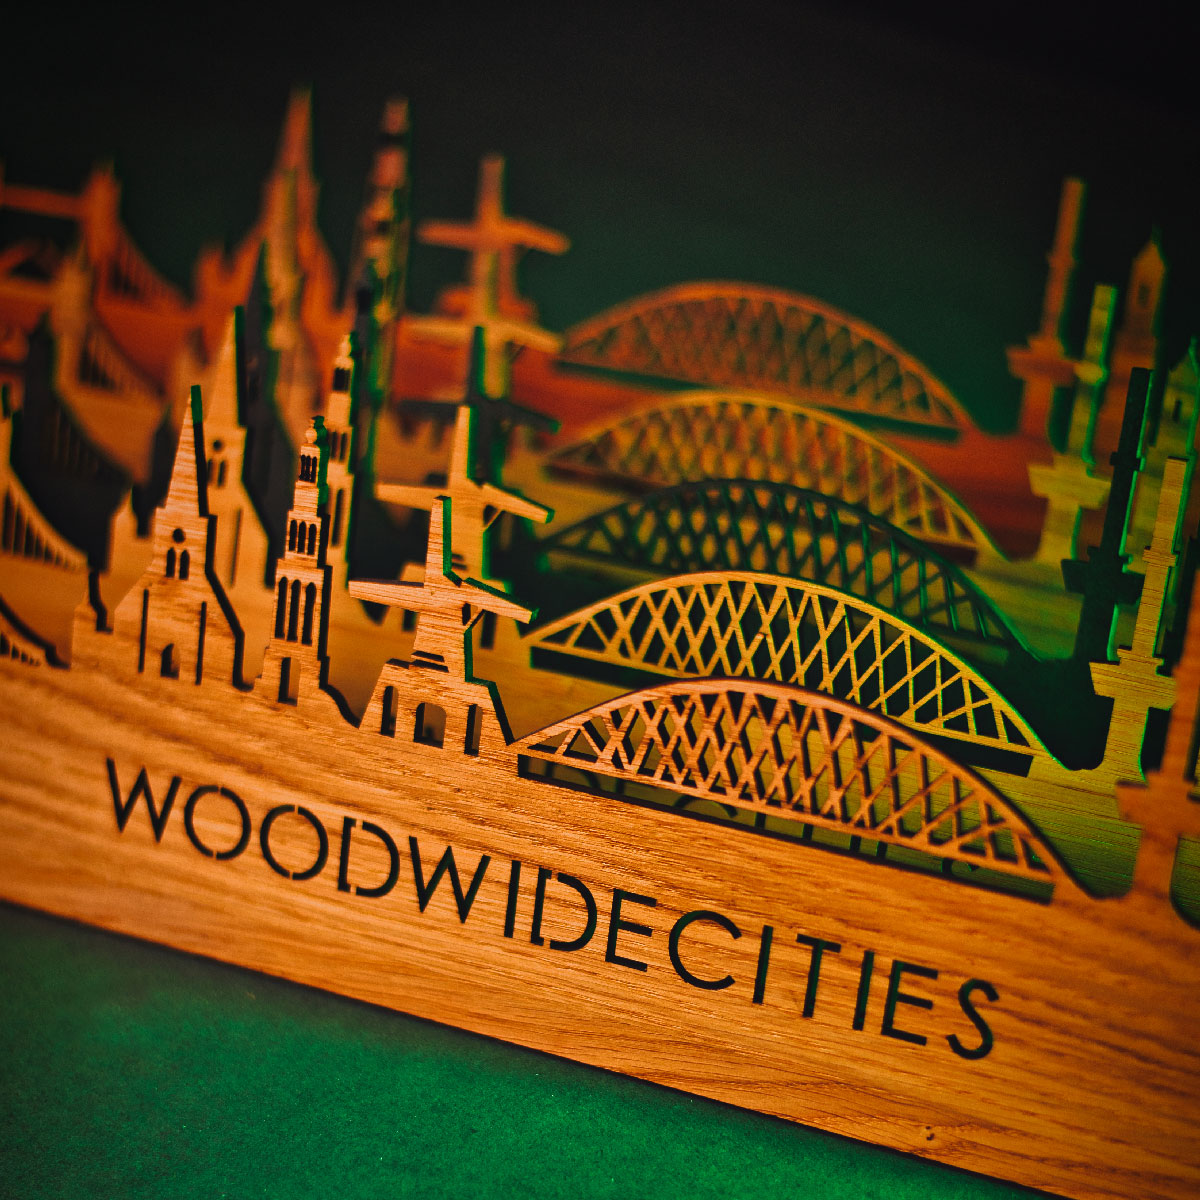 Skyline Klok Hilversum Bamboe houten cadeau wanddecoratie relatiegeschenk van WoodWideCities